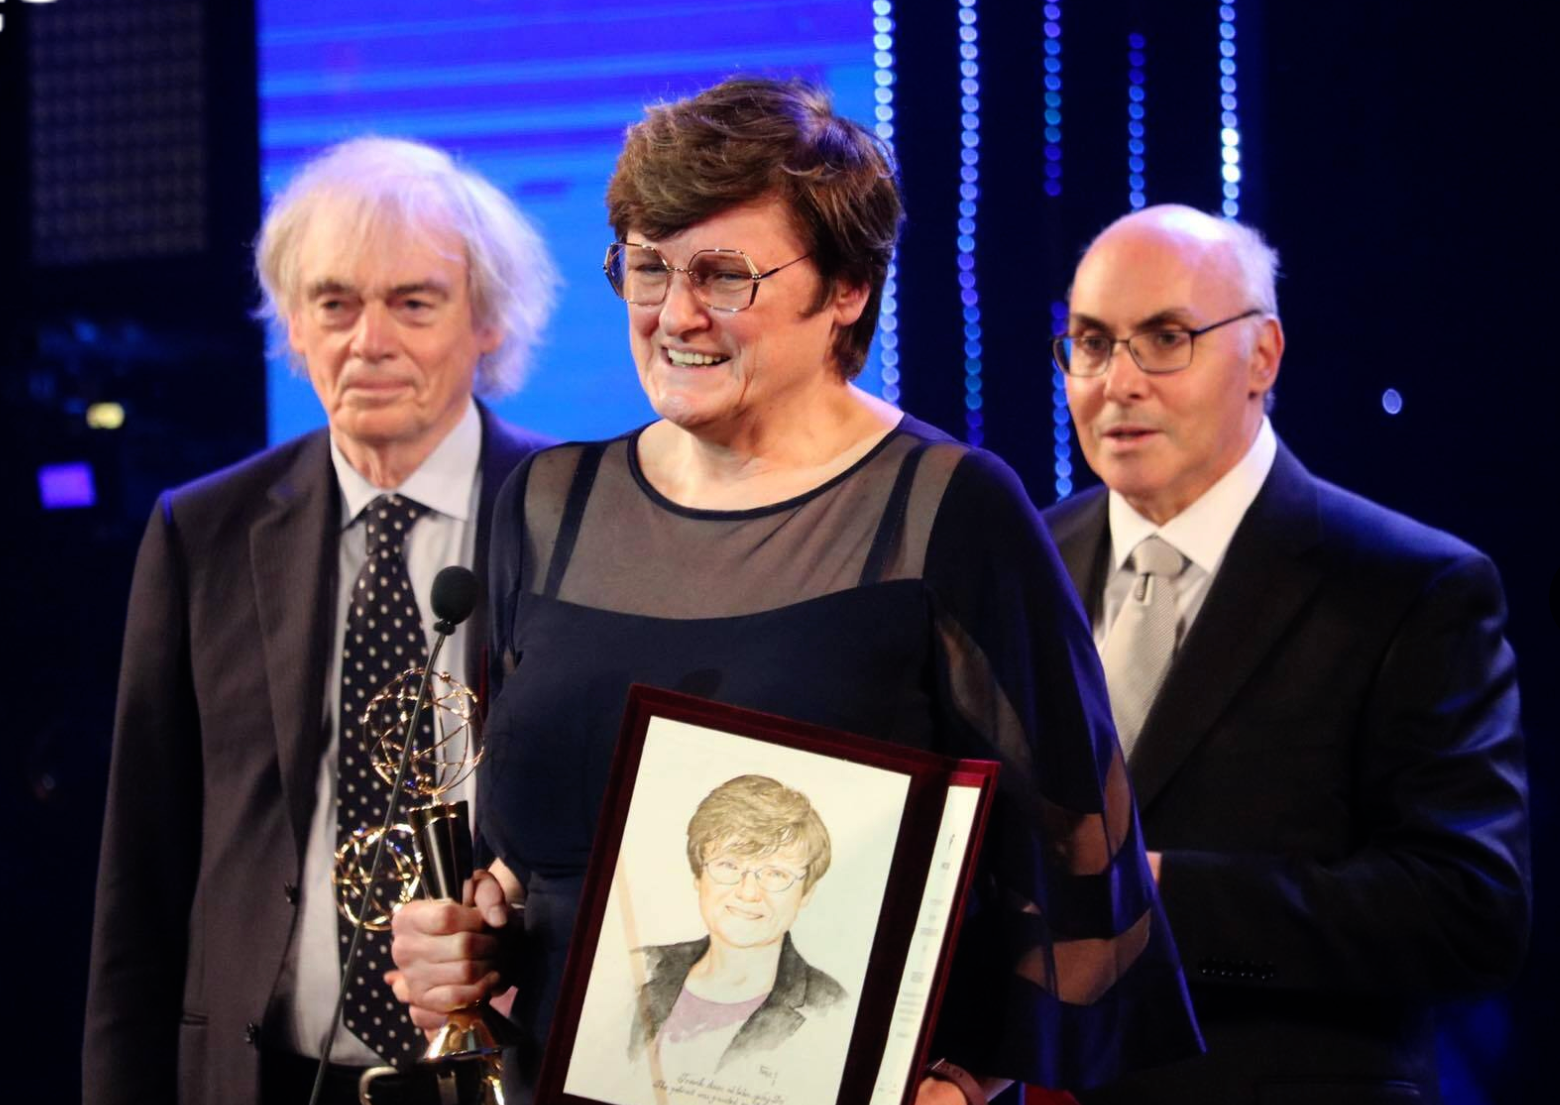 Bộ ba nhà khoa học GS Pieter Cullis, TS Katalin Karikó và GS Drew Weissman (từ trái qua phải) góp phần tạo ra dòng vaccine mới được trao Giải thưởng chính VinFuture 2021.